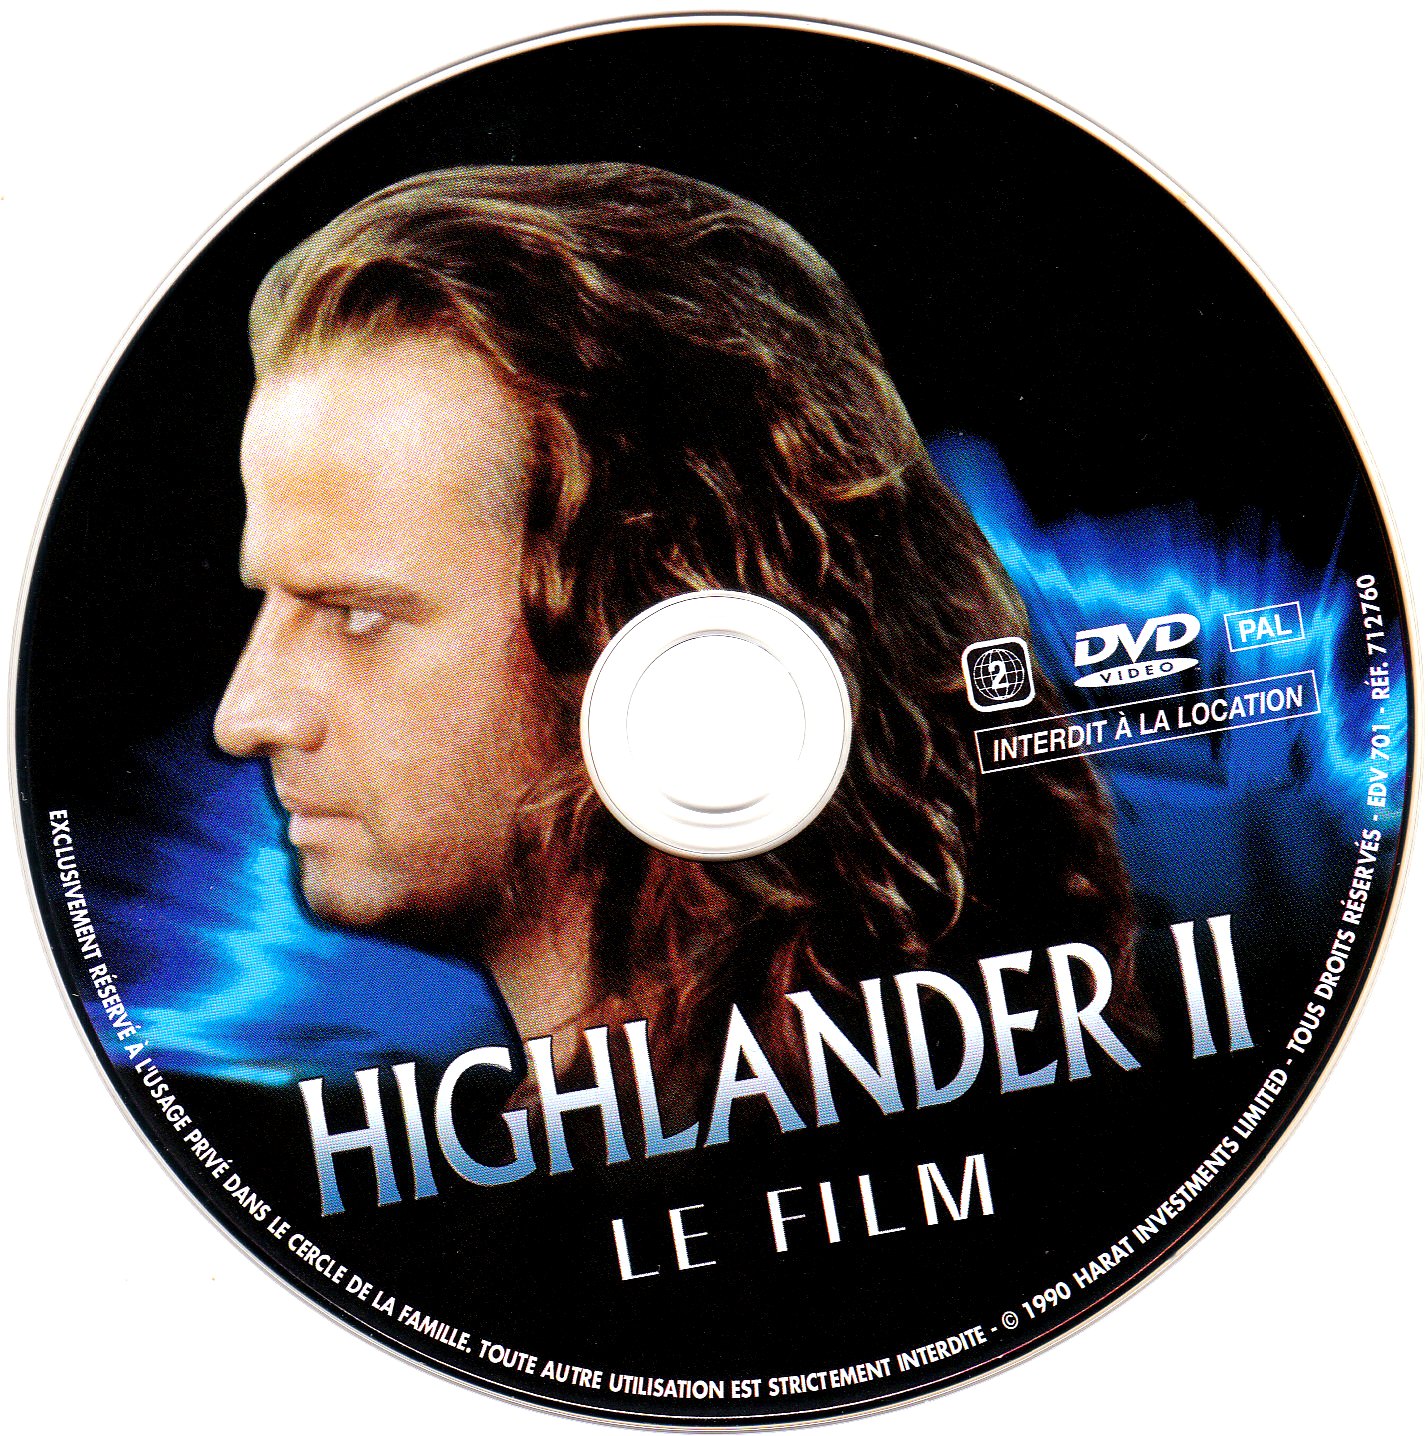 Highlander 2 (FILM)